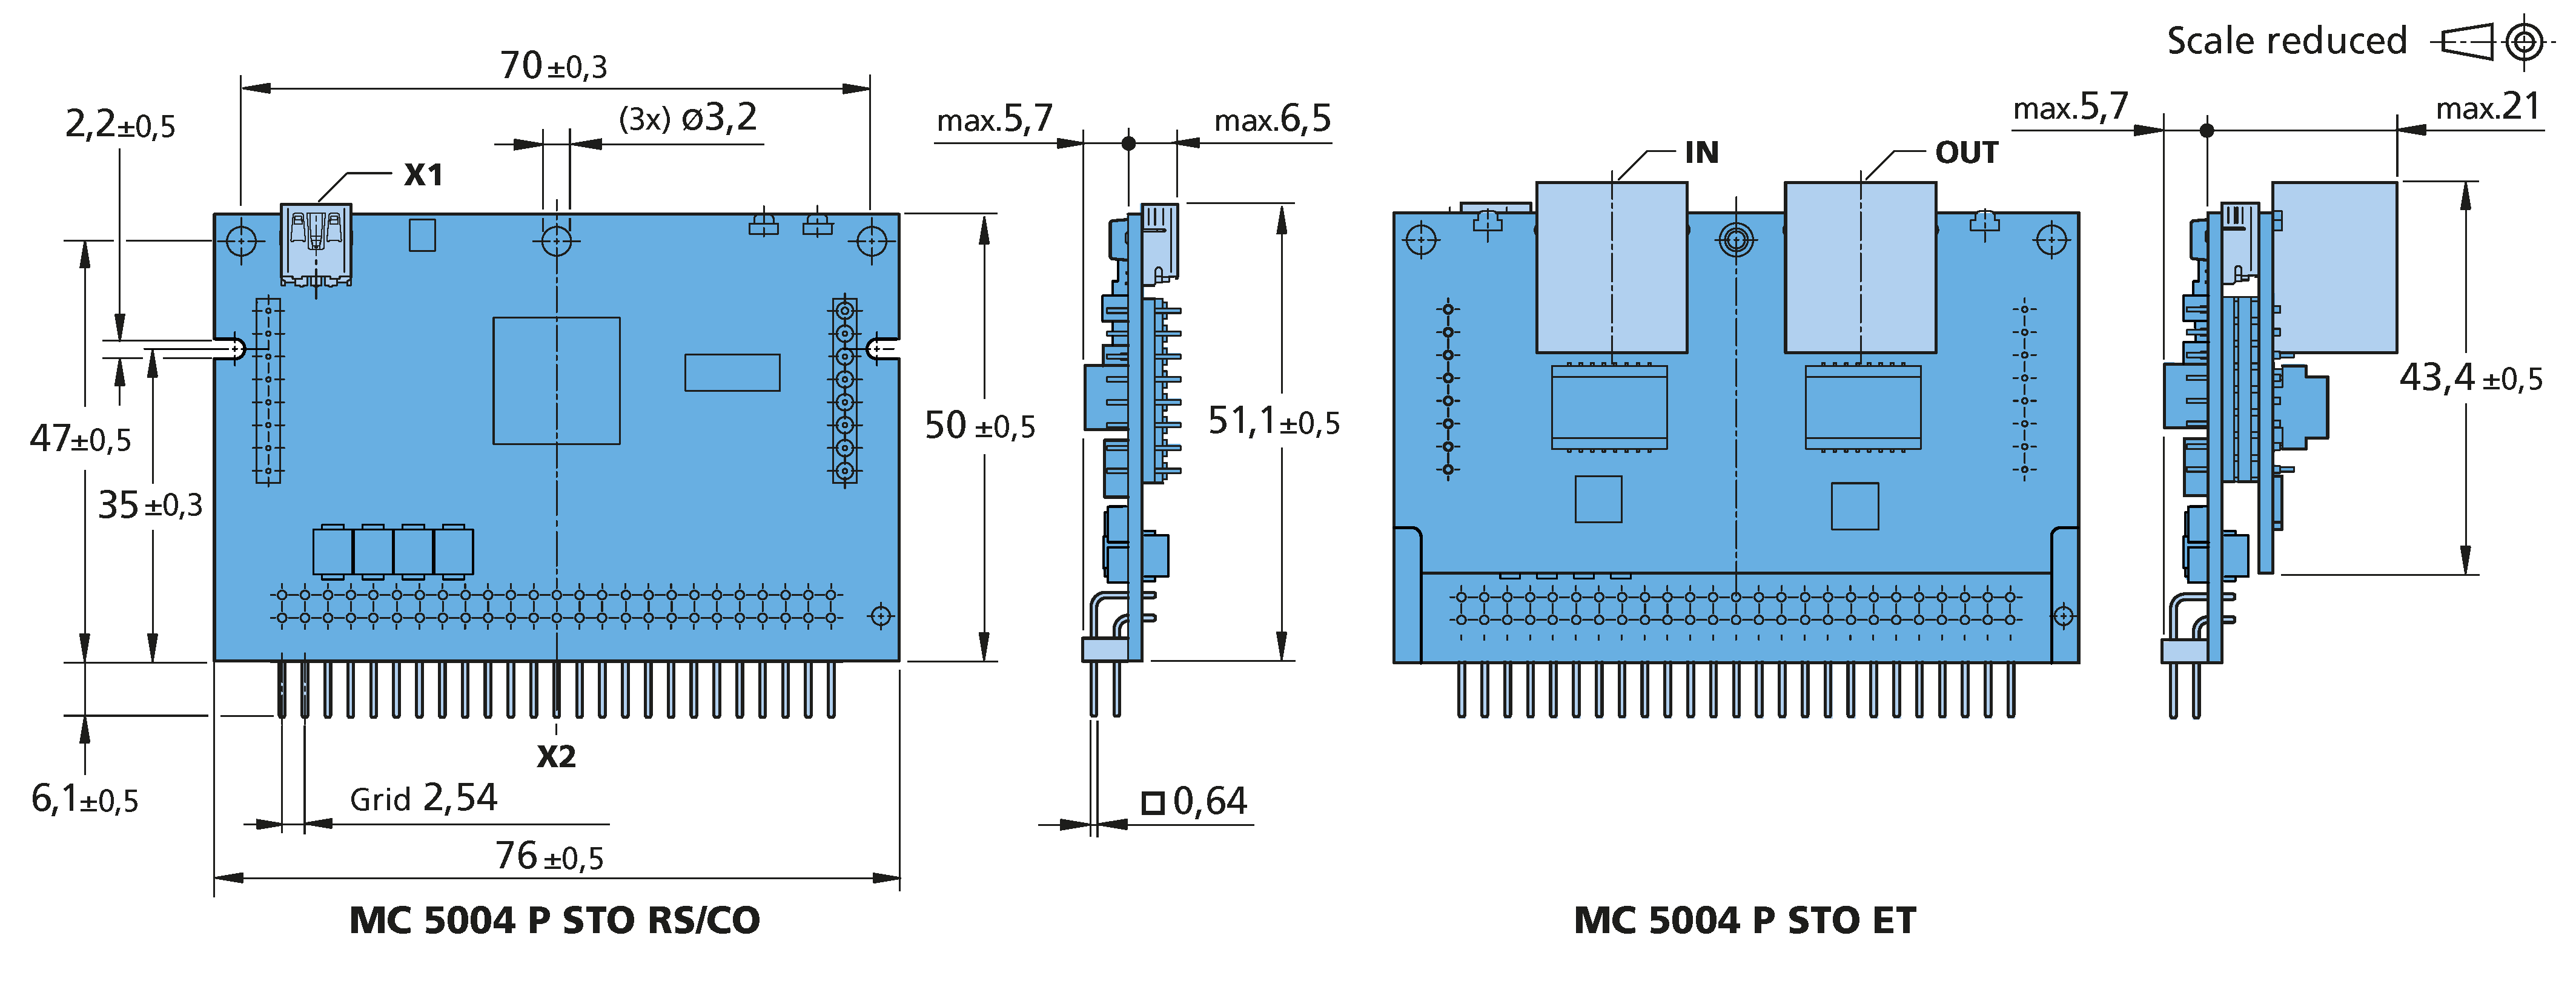 ドライブエレクトロニクス Series MC 5004 P STO